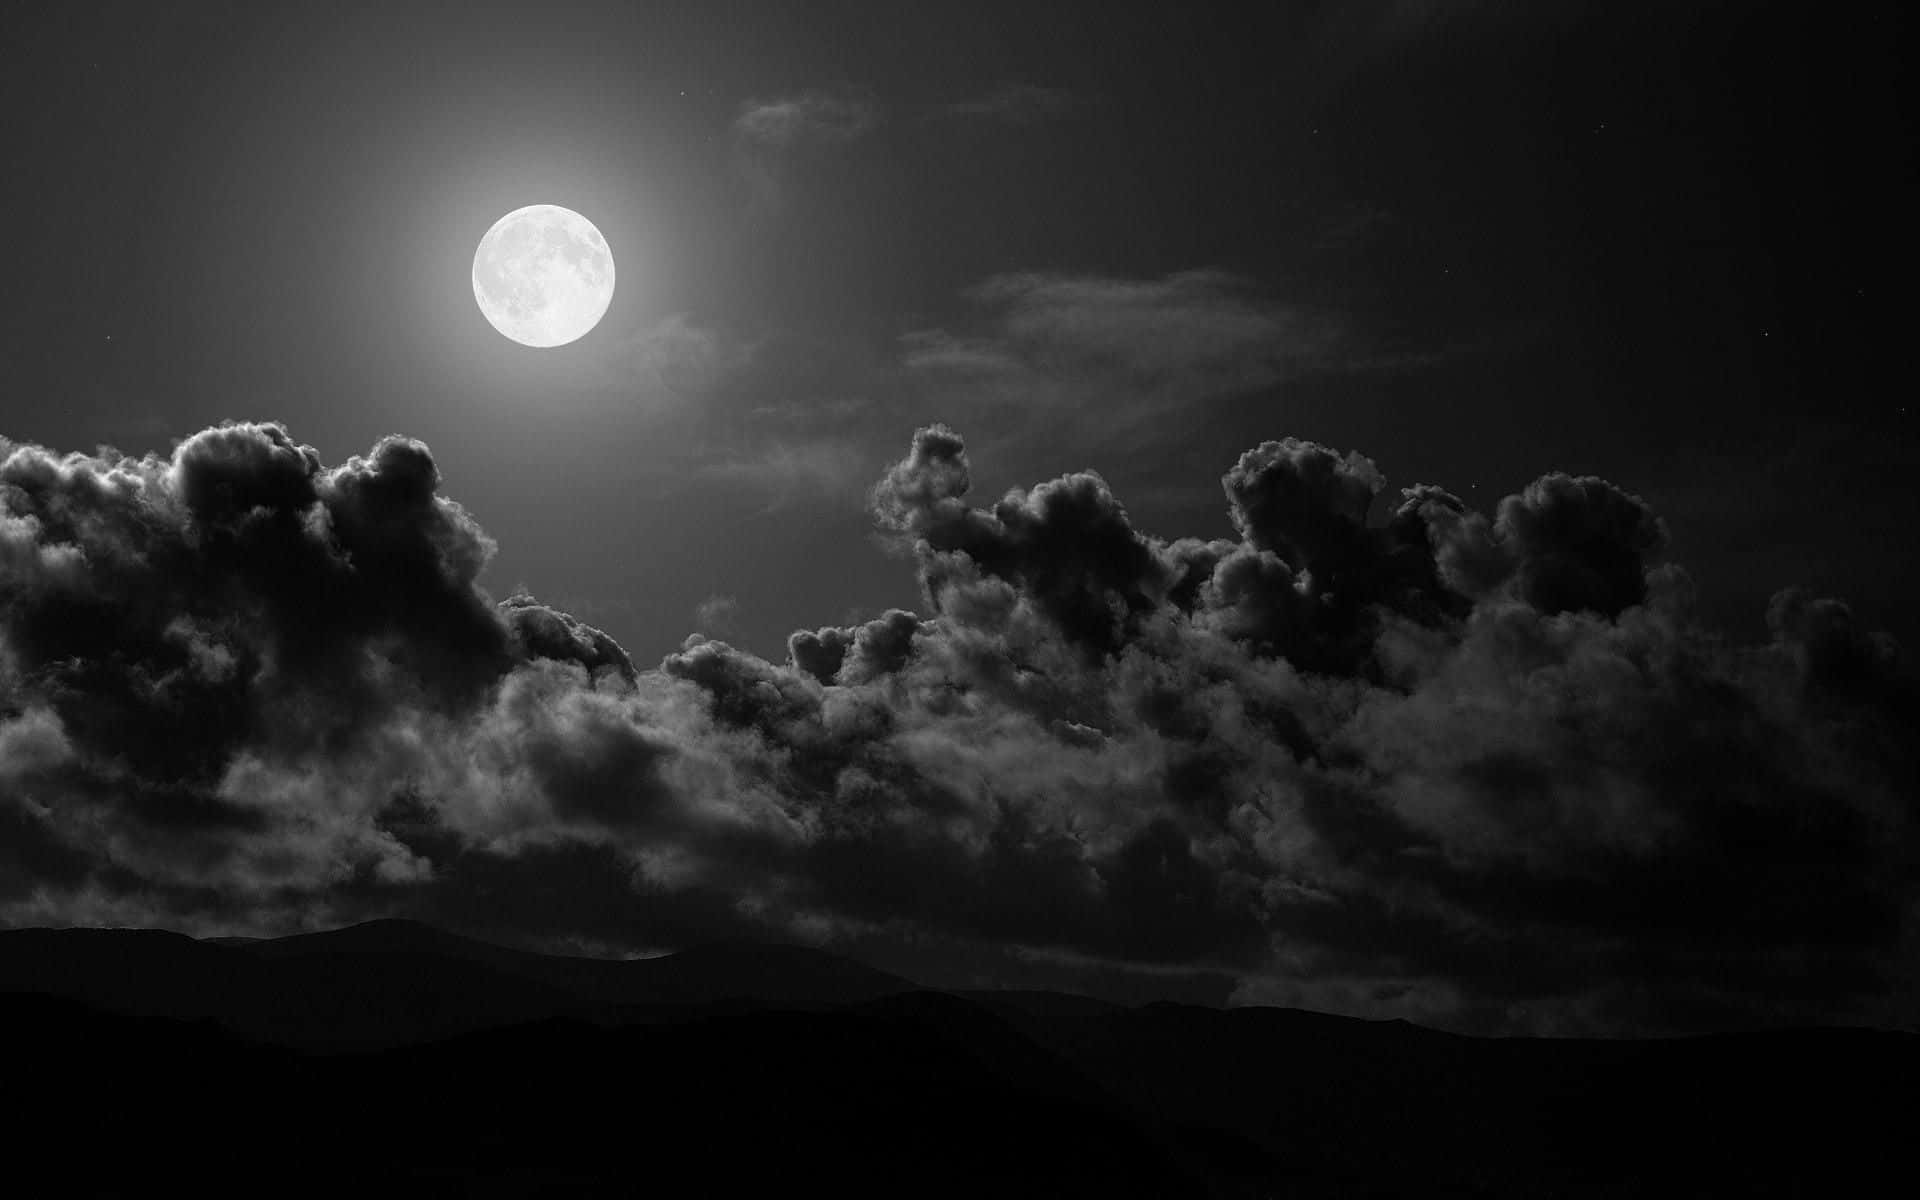 Unafotografía En Blanco Y Negro De La Luna Y Las Nubes Fondo de pantalla